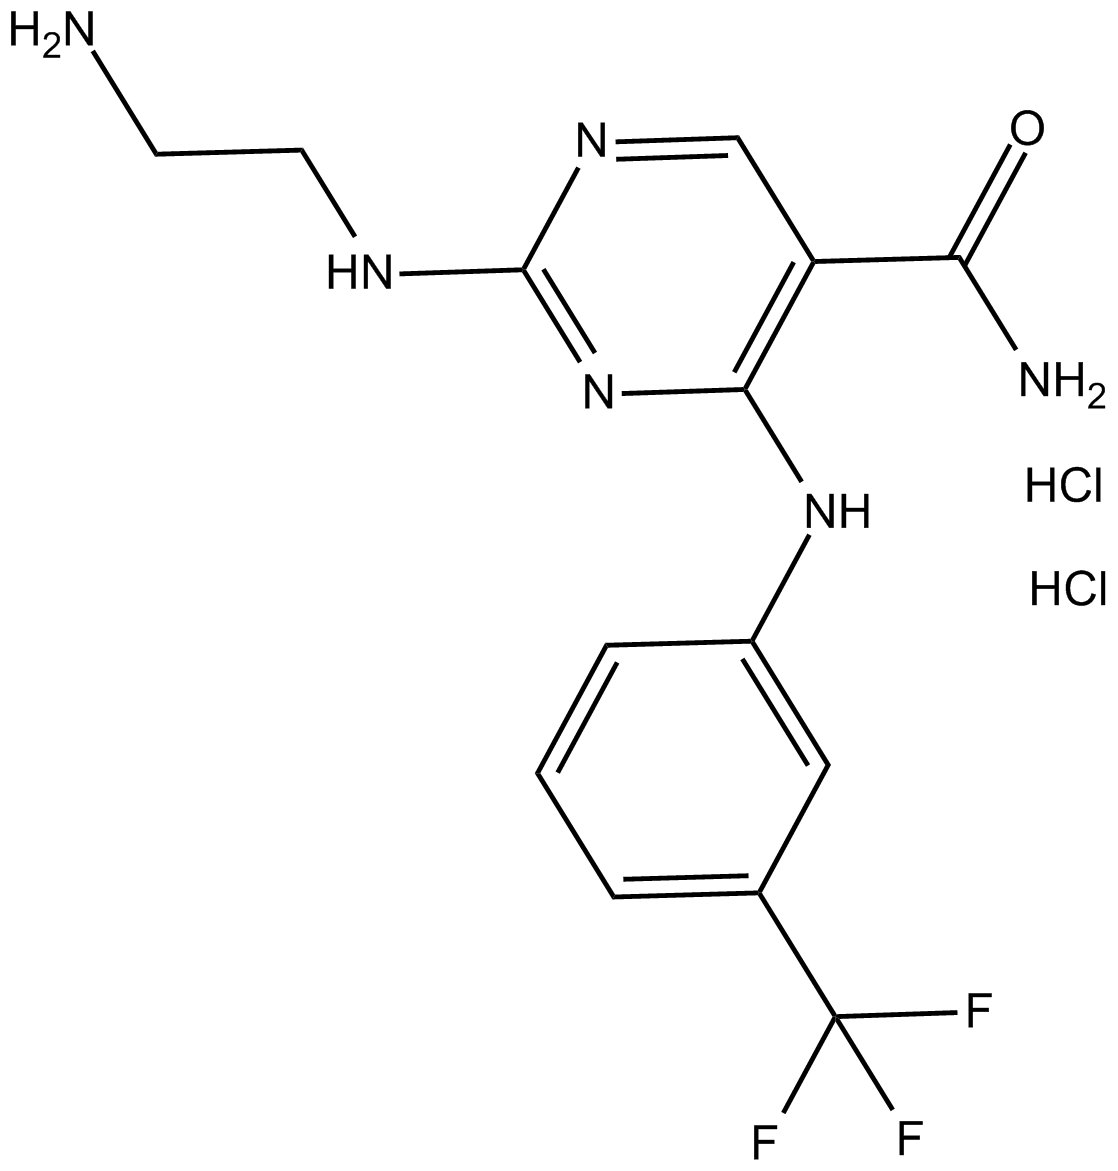 Syk Inhibitor II (hydrochloride)